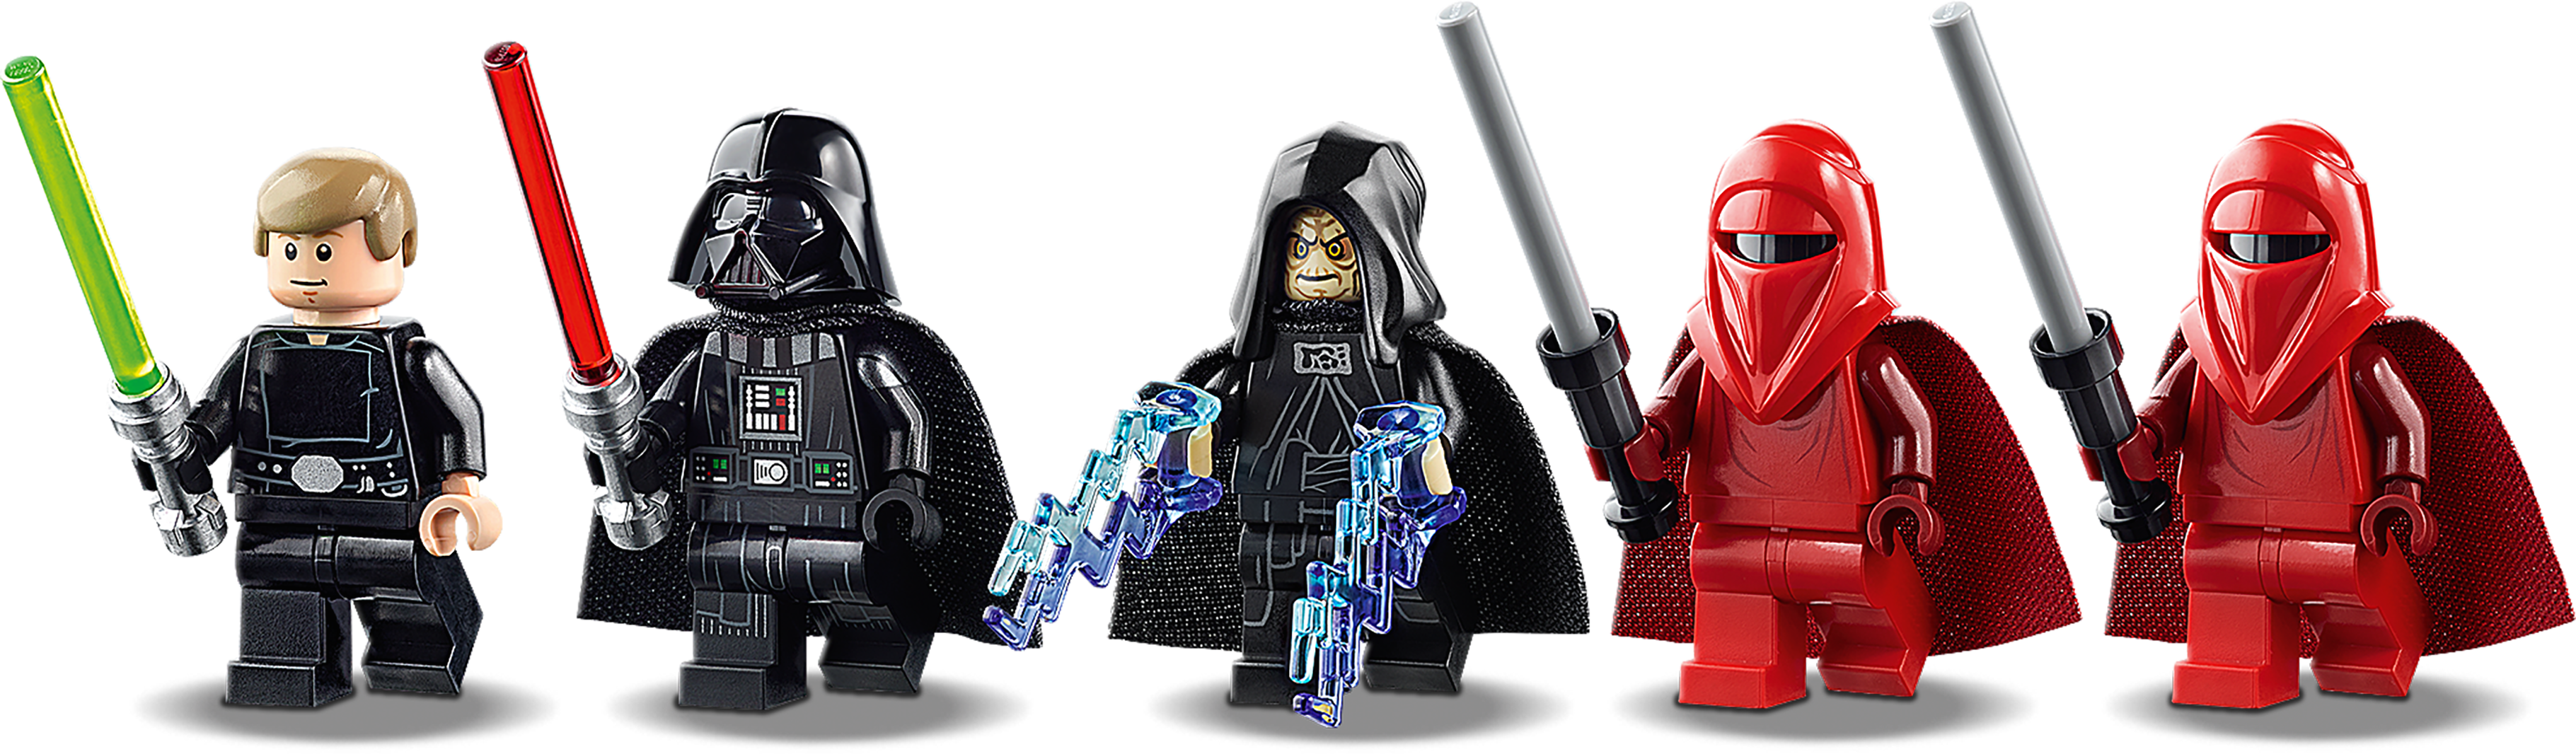 LEGO® Star Wars™ Final Duel Minifigure Luke Skywalker 75093